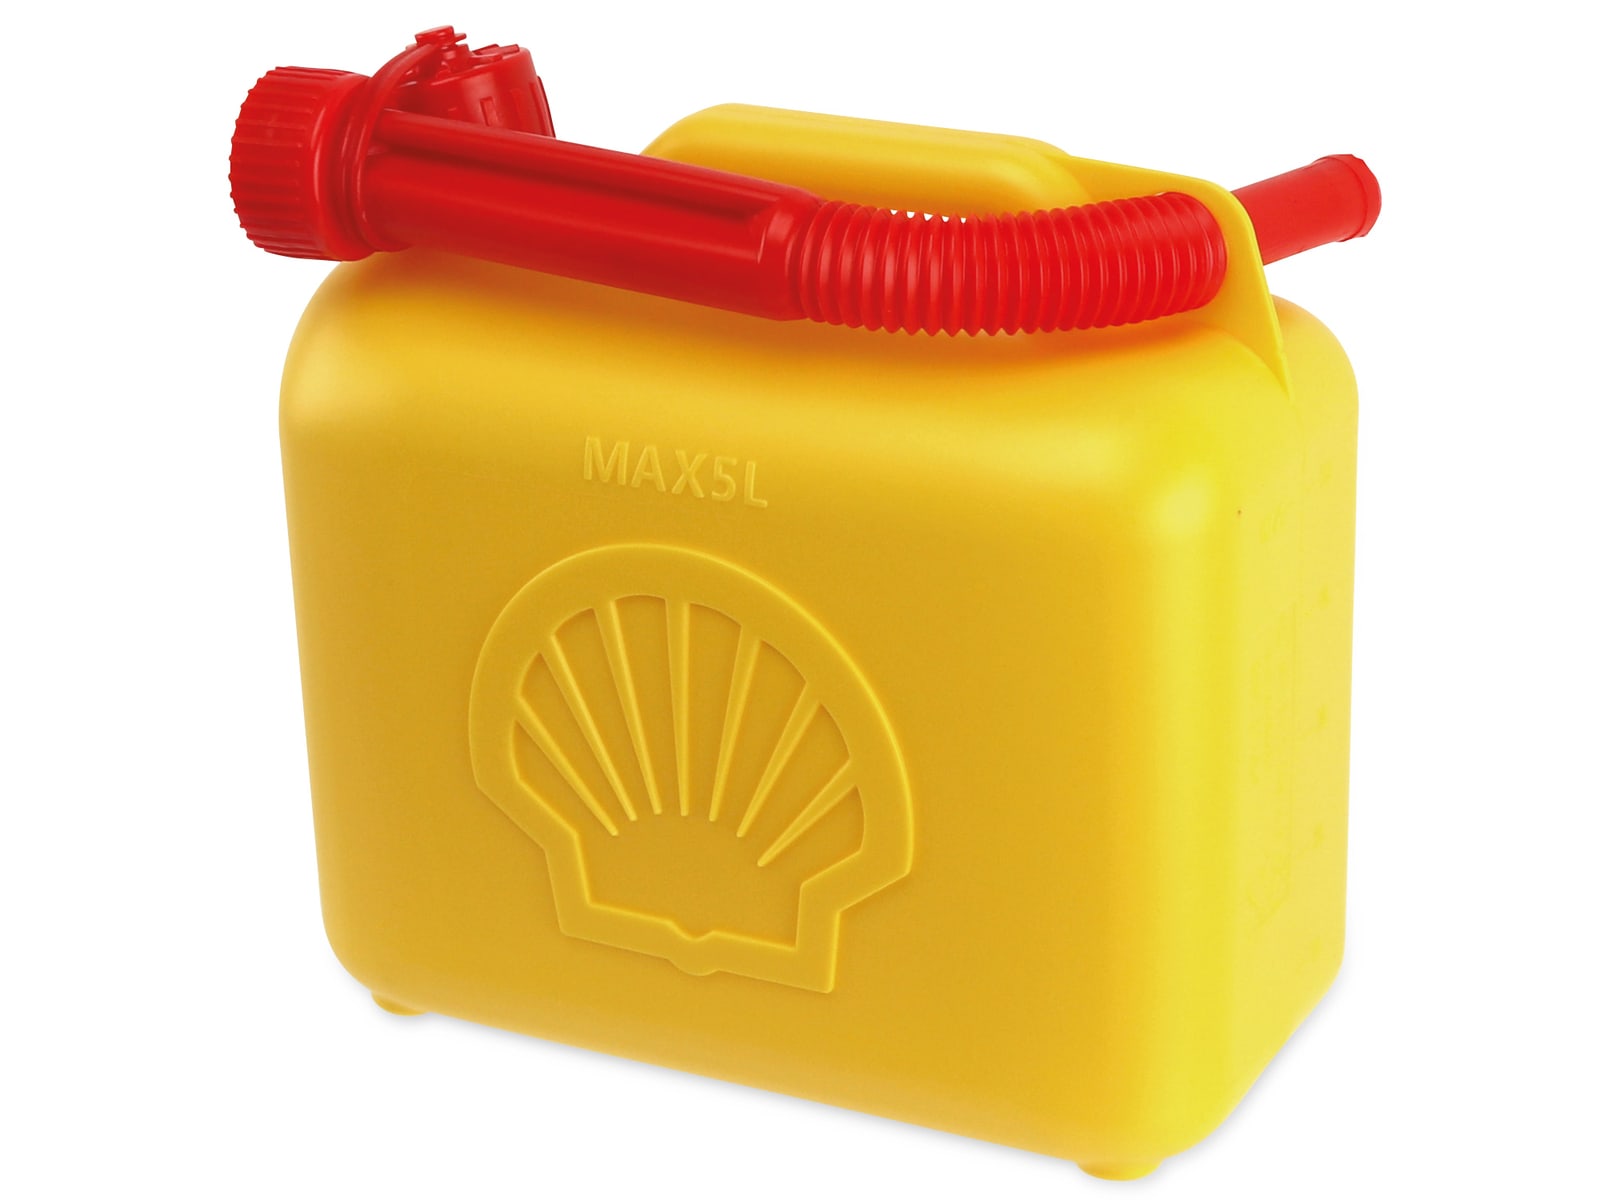 SHELL Benzinkanister, 5 L, gelb online kaufen